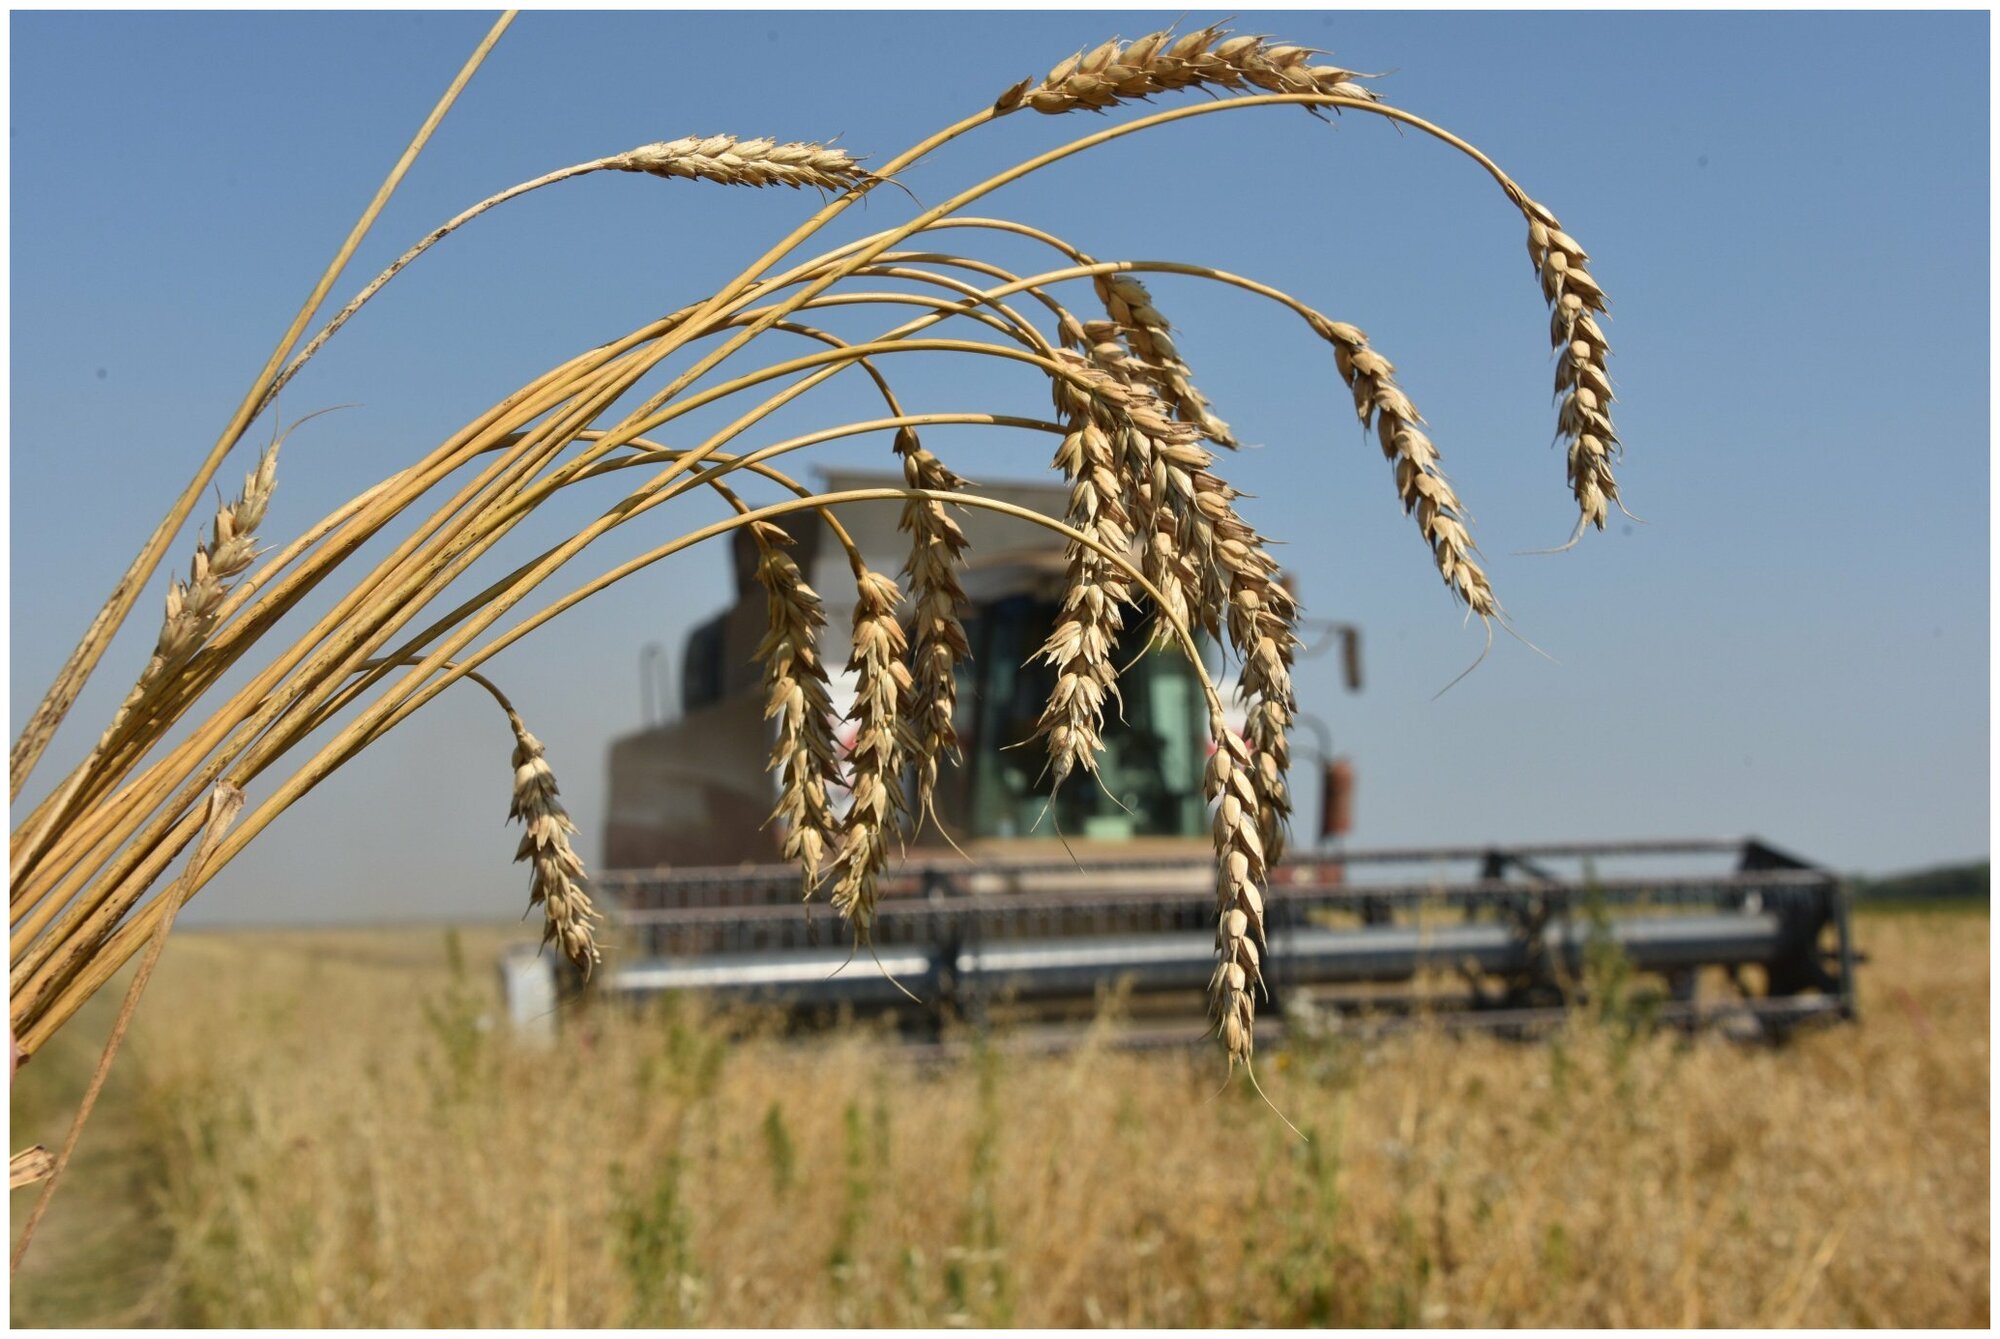 Пшеница свежее зерно в мешке 20кг не шлифованная Эко продукт для проращивания и пивоварения